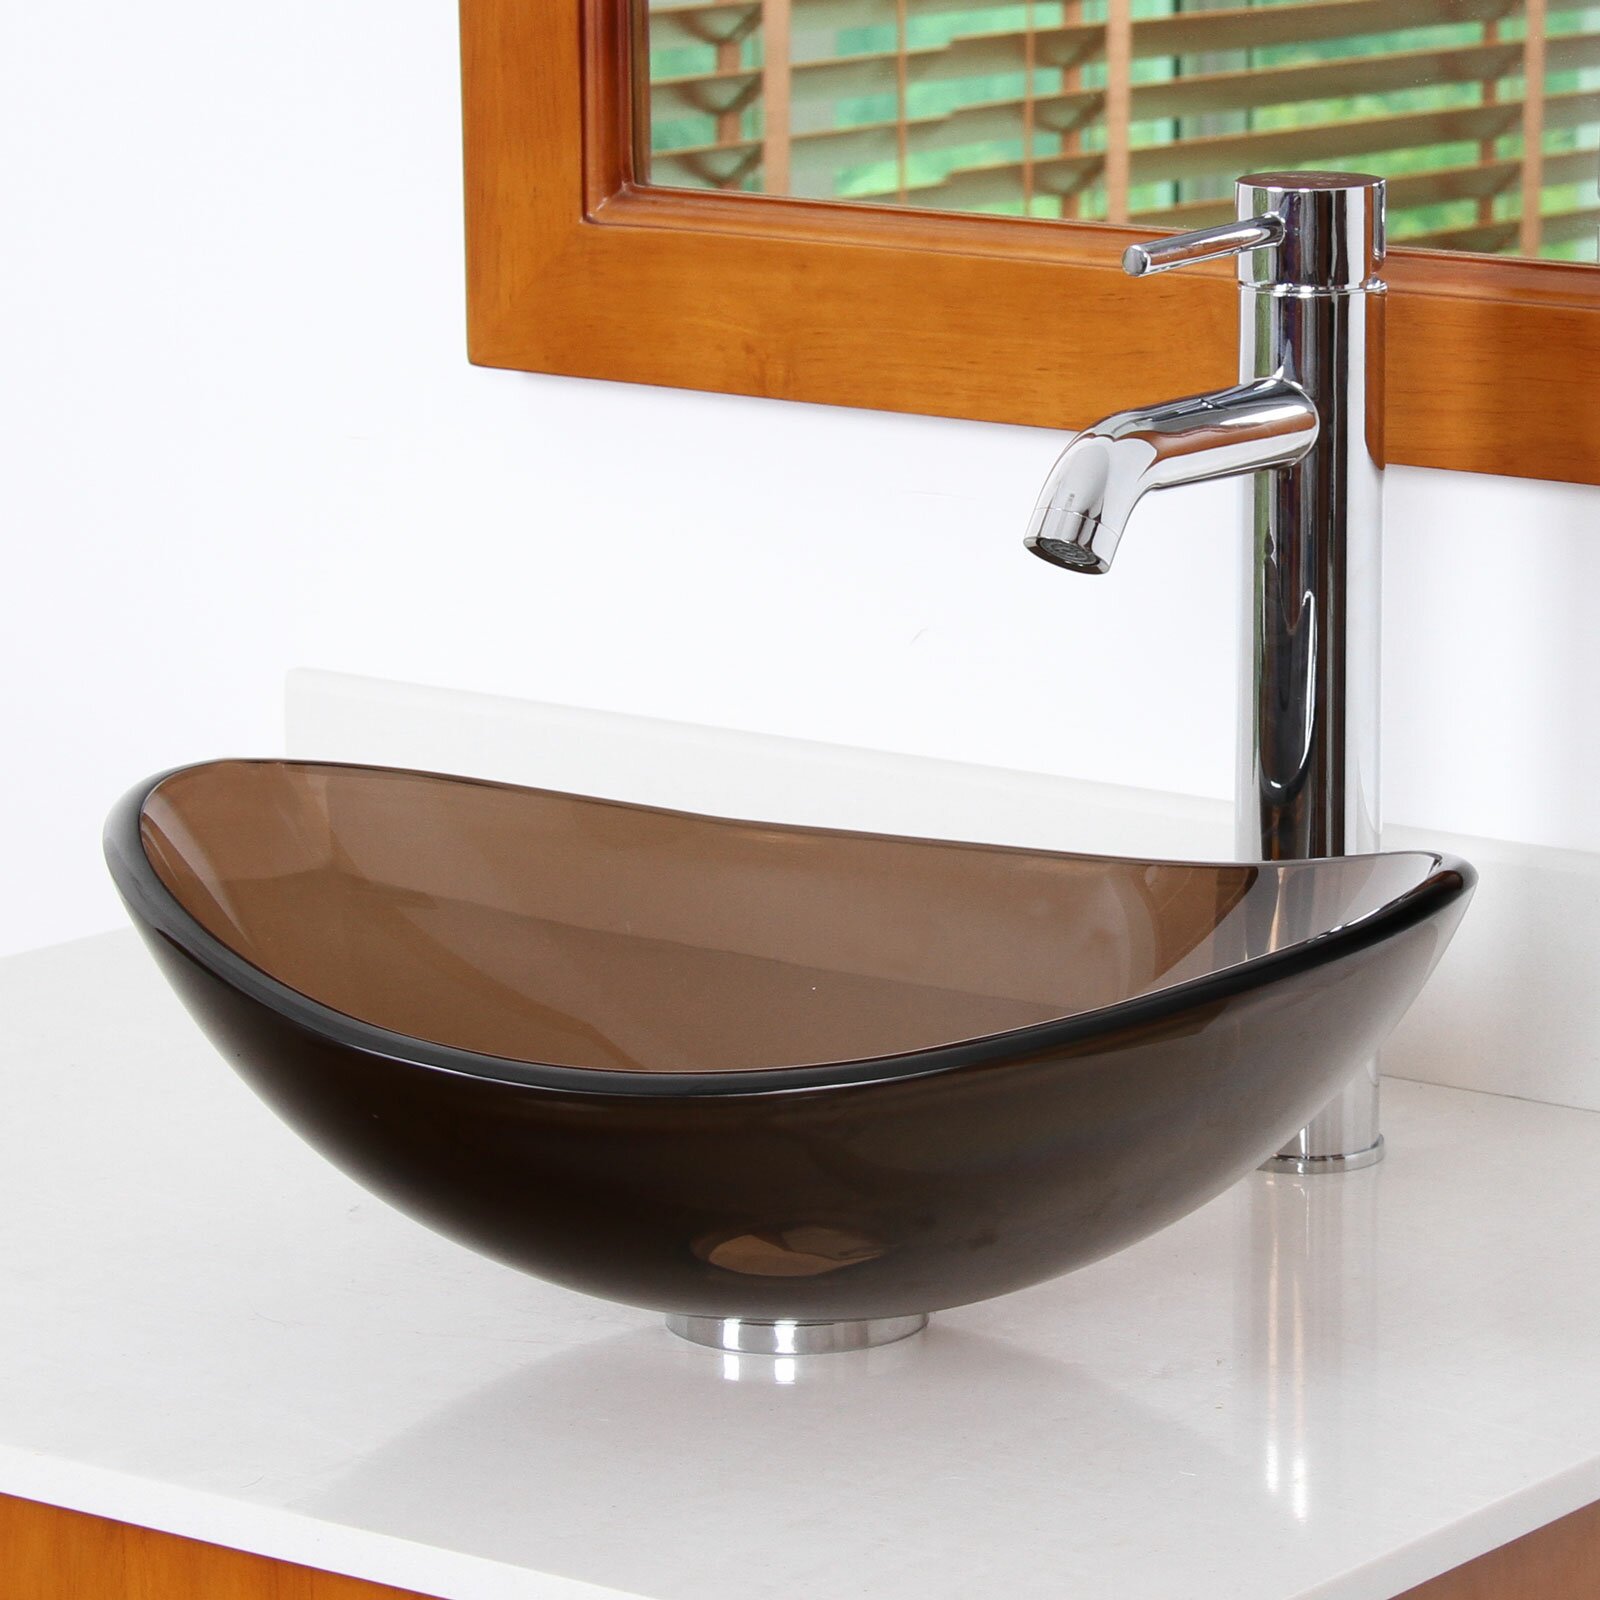 Bowl Bathroom Sink Gallery Image Seniorhomes